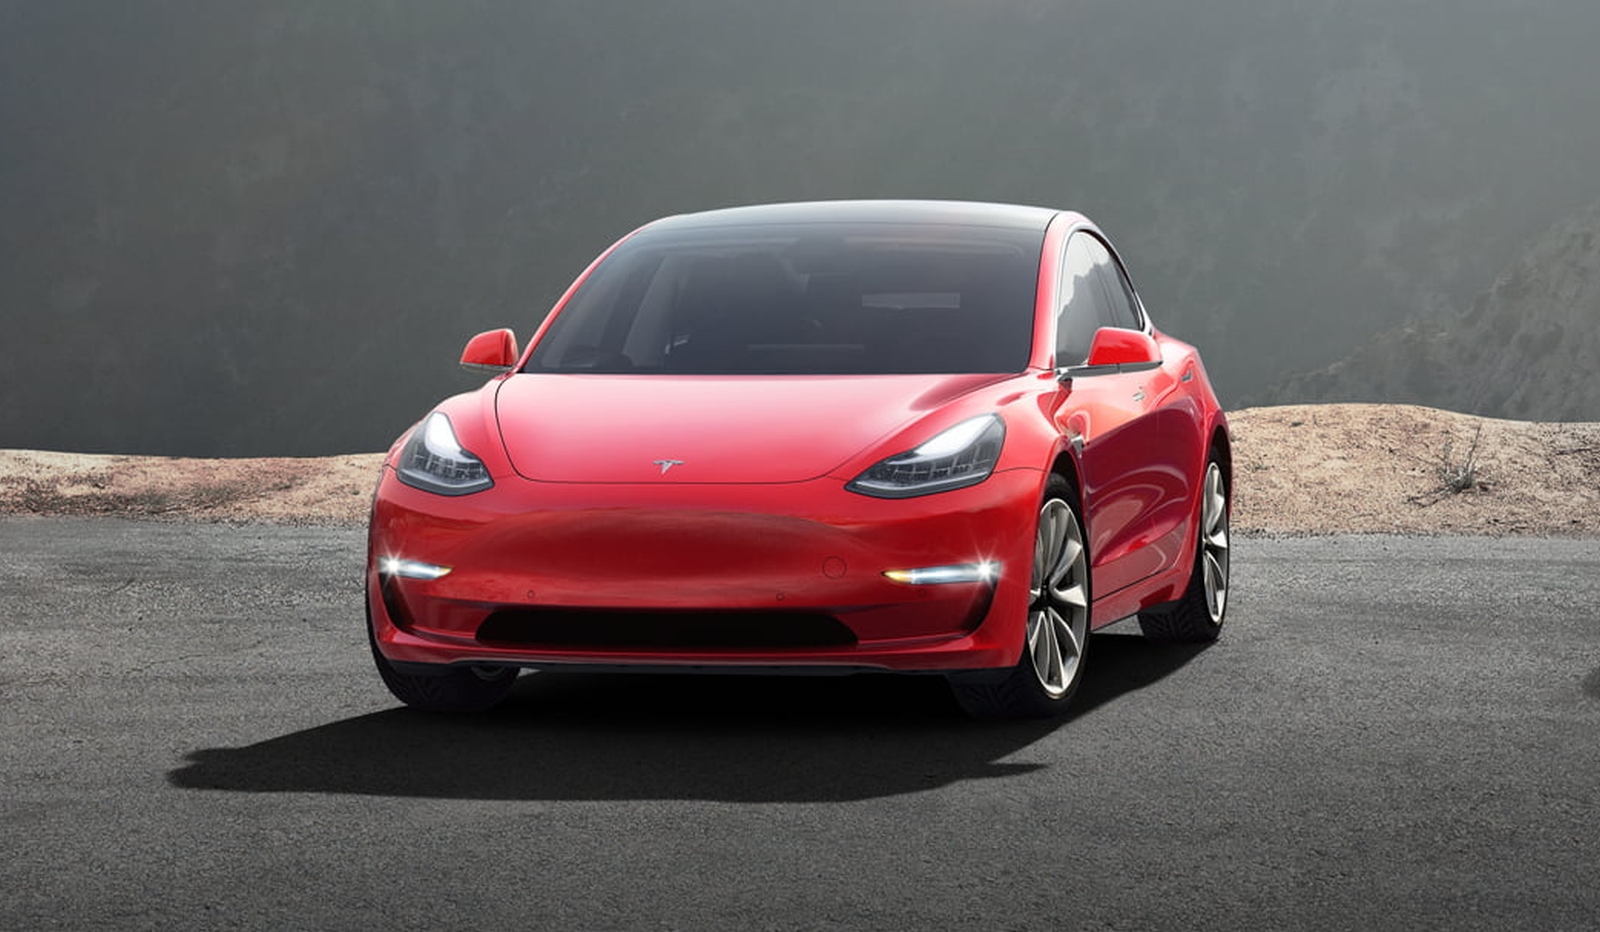 Melbourne Oproepen ventilatie Duik in de prijslijst: Hoe duur is zo'n Tesla Model 3 precies?